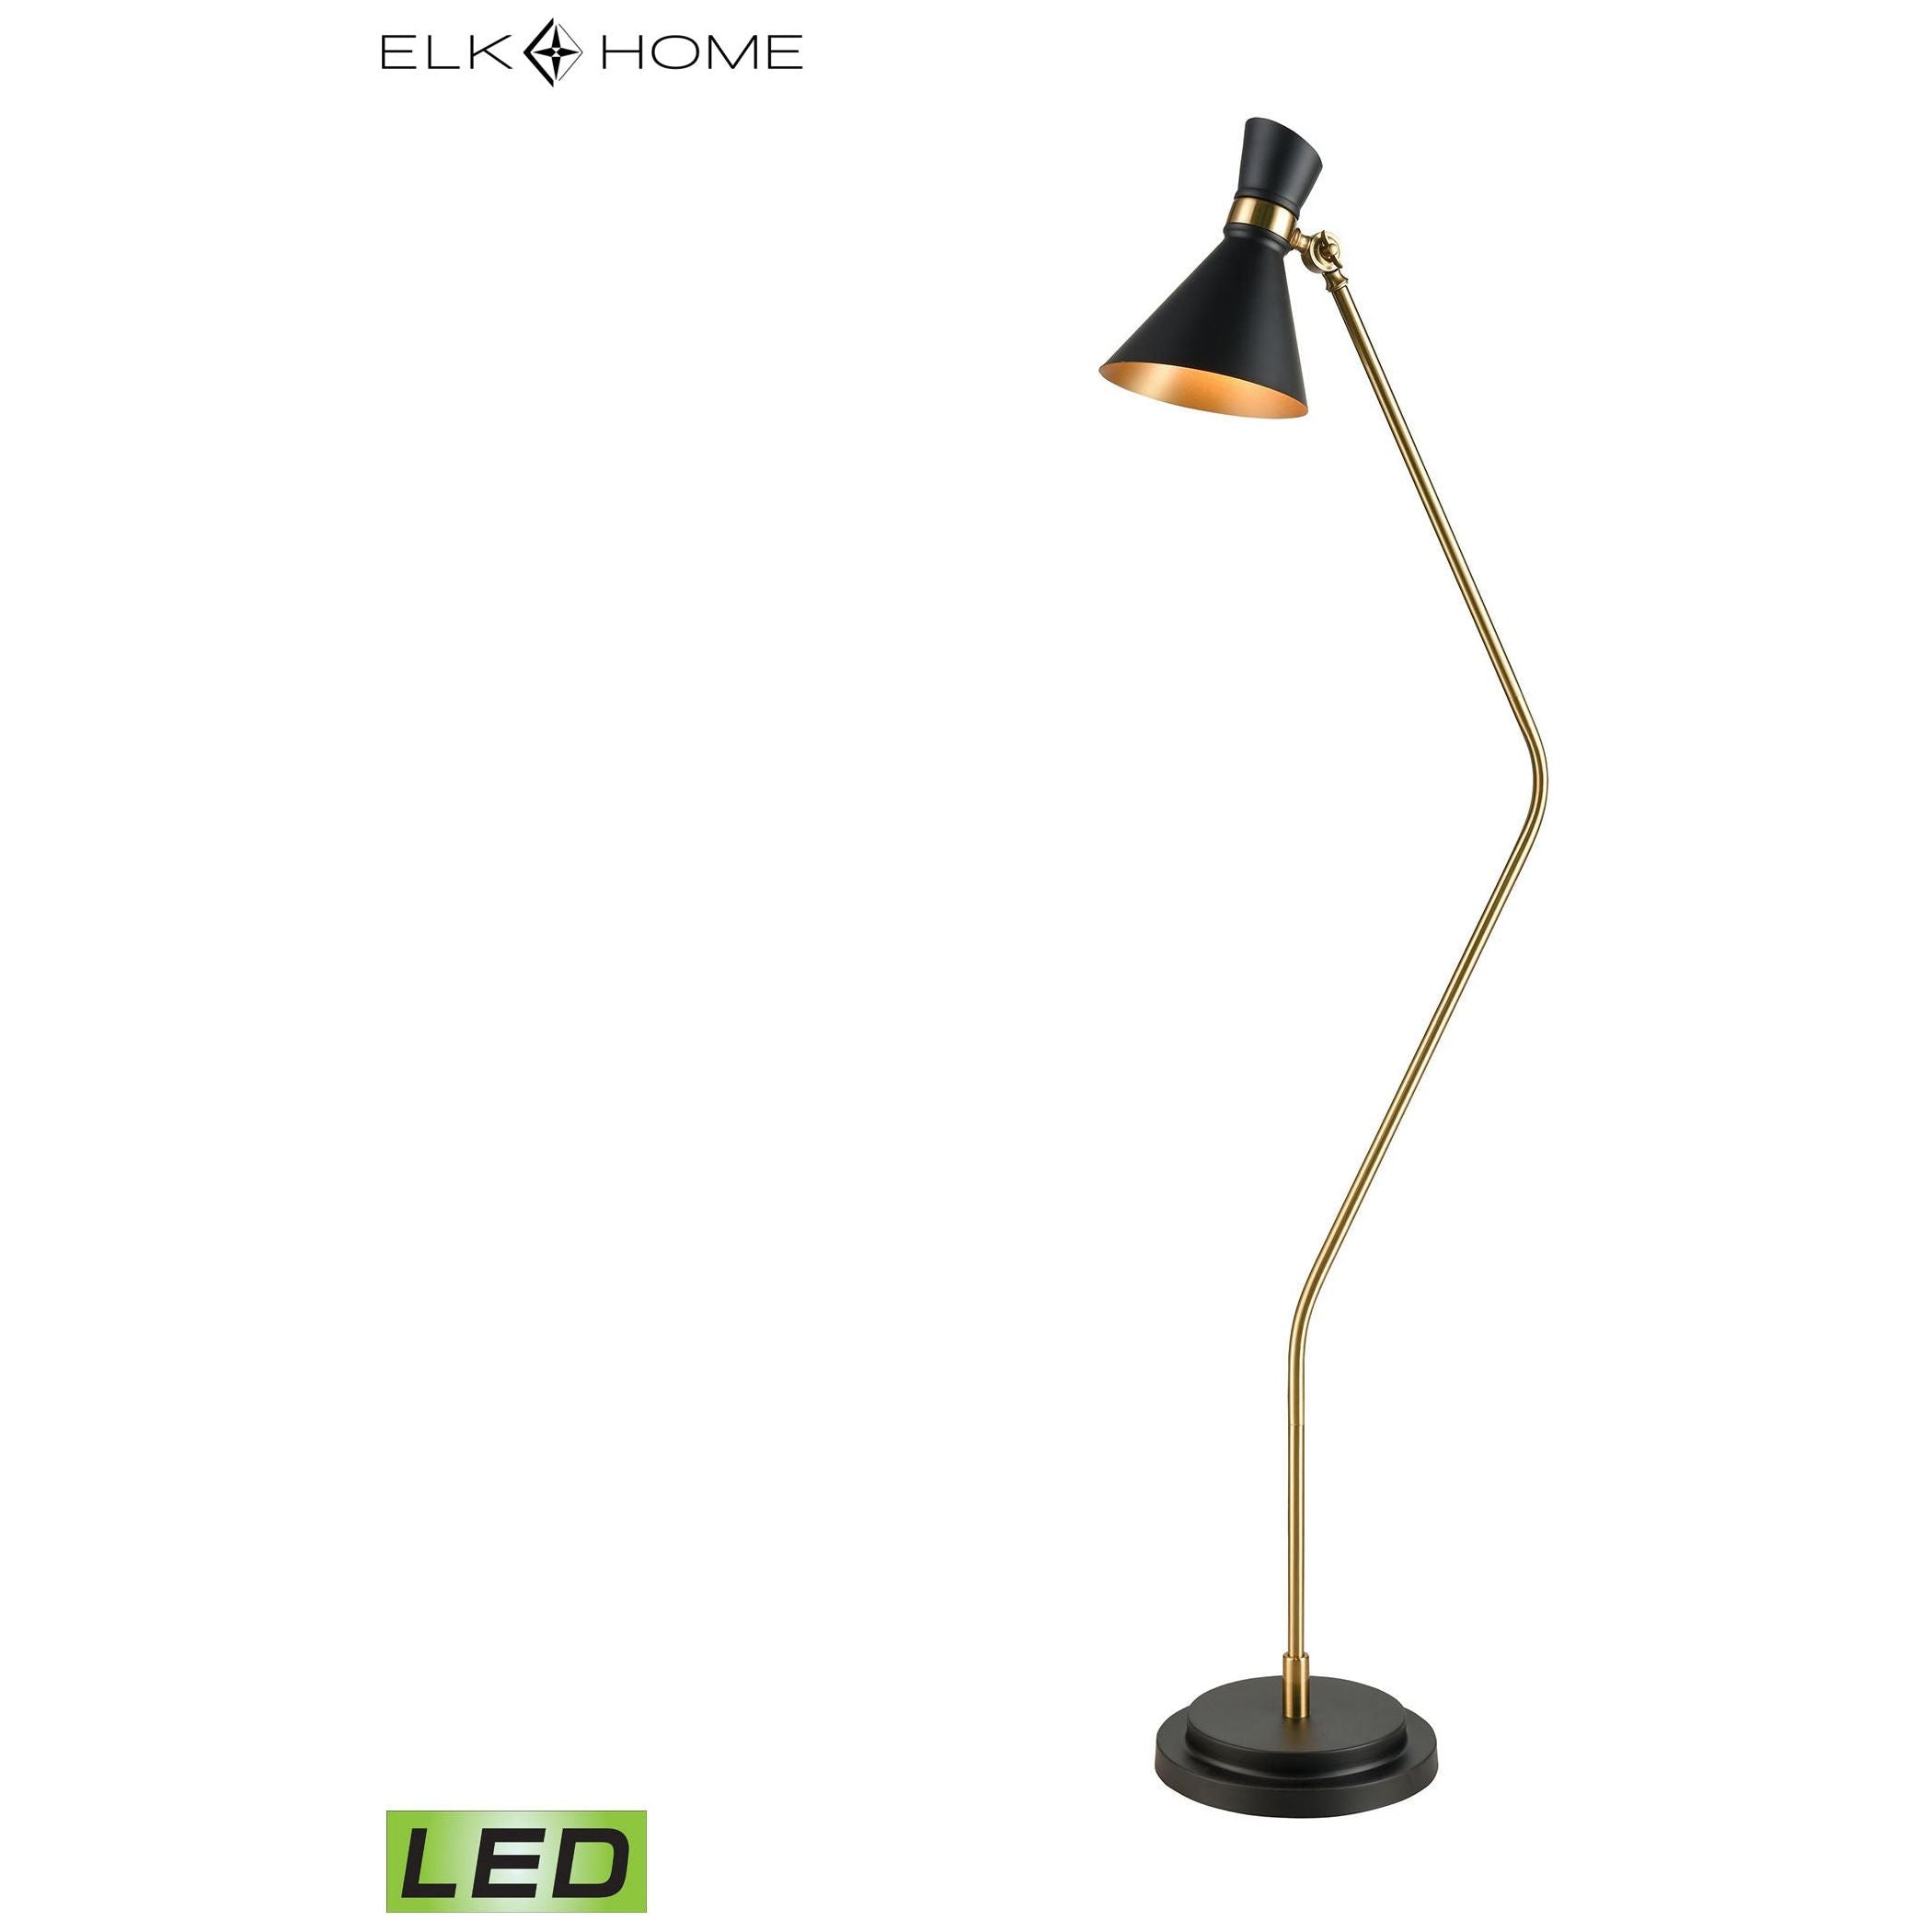 Virtuoso 60" High 1-Light Floor Lamp